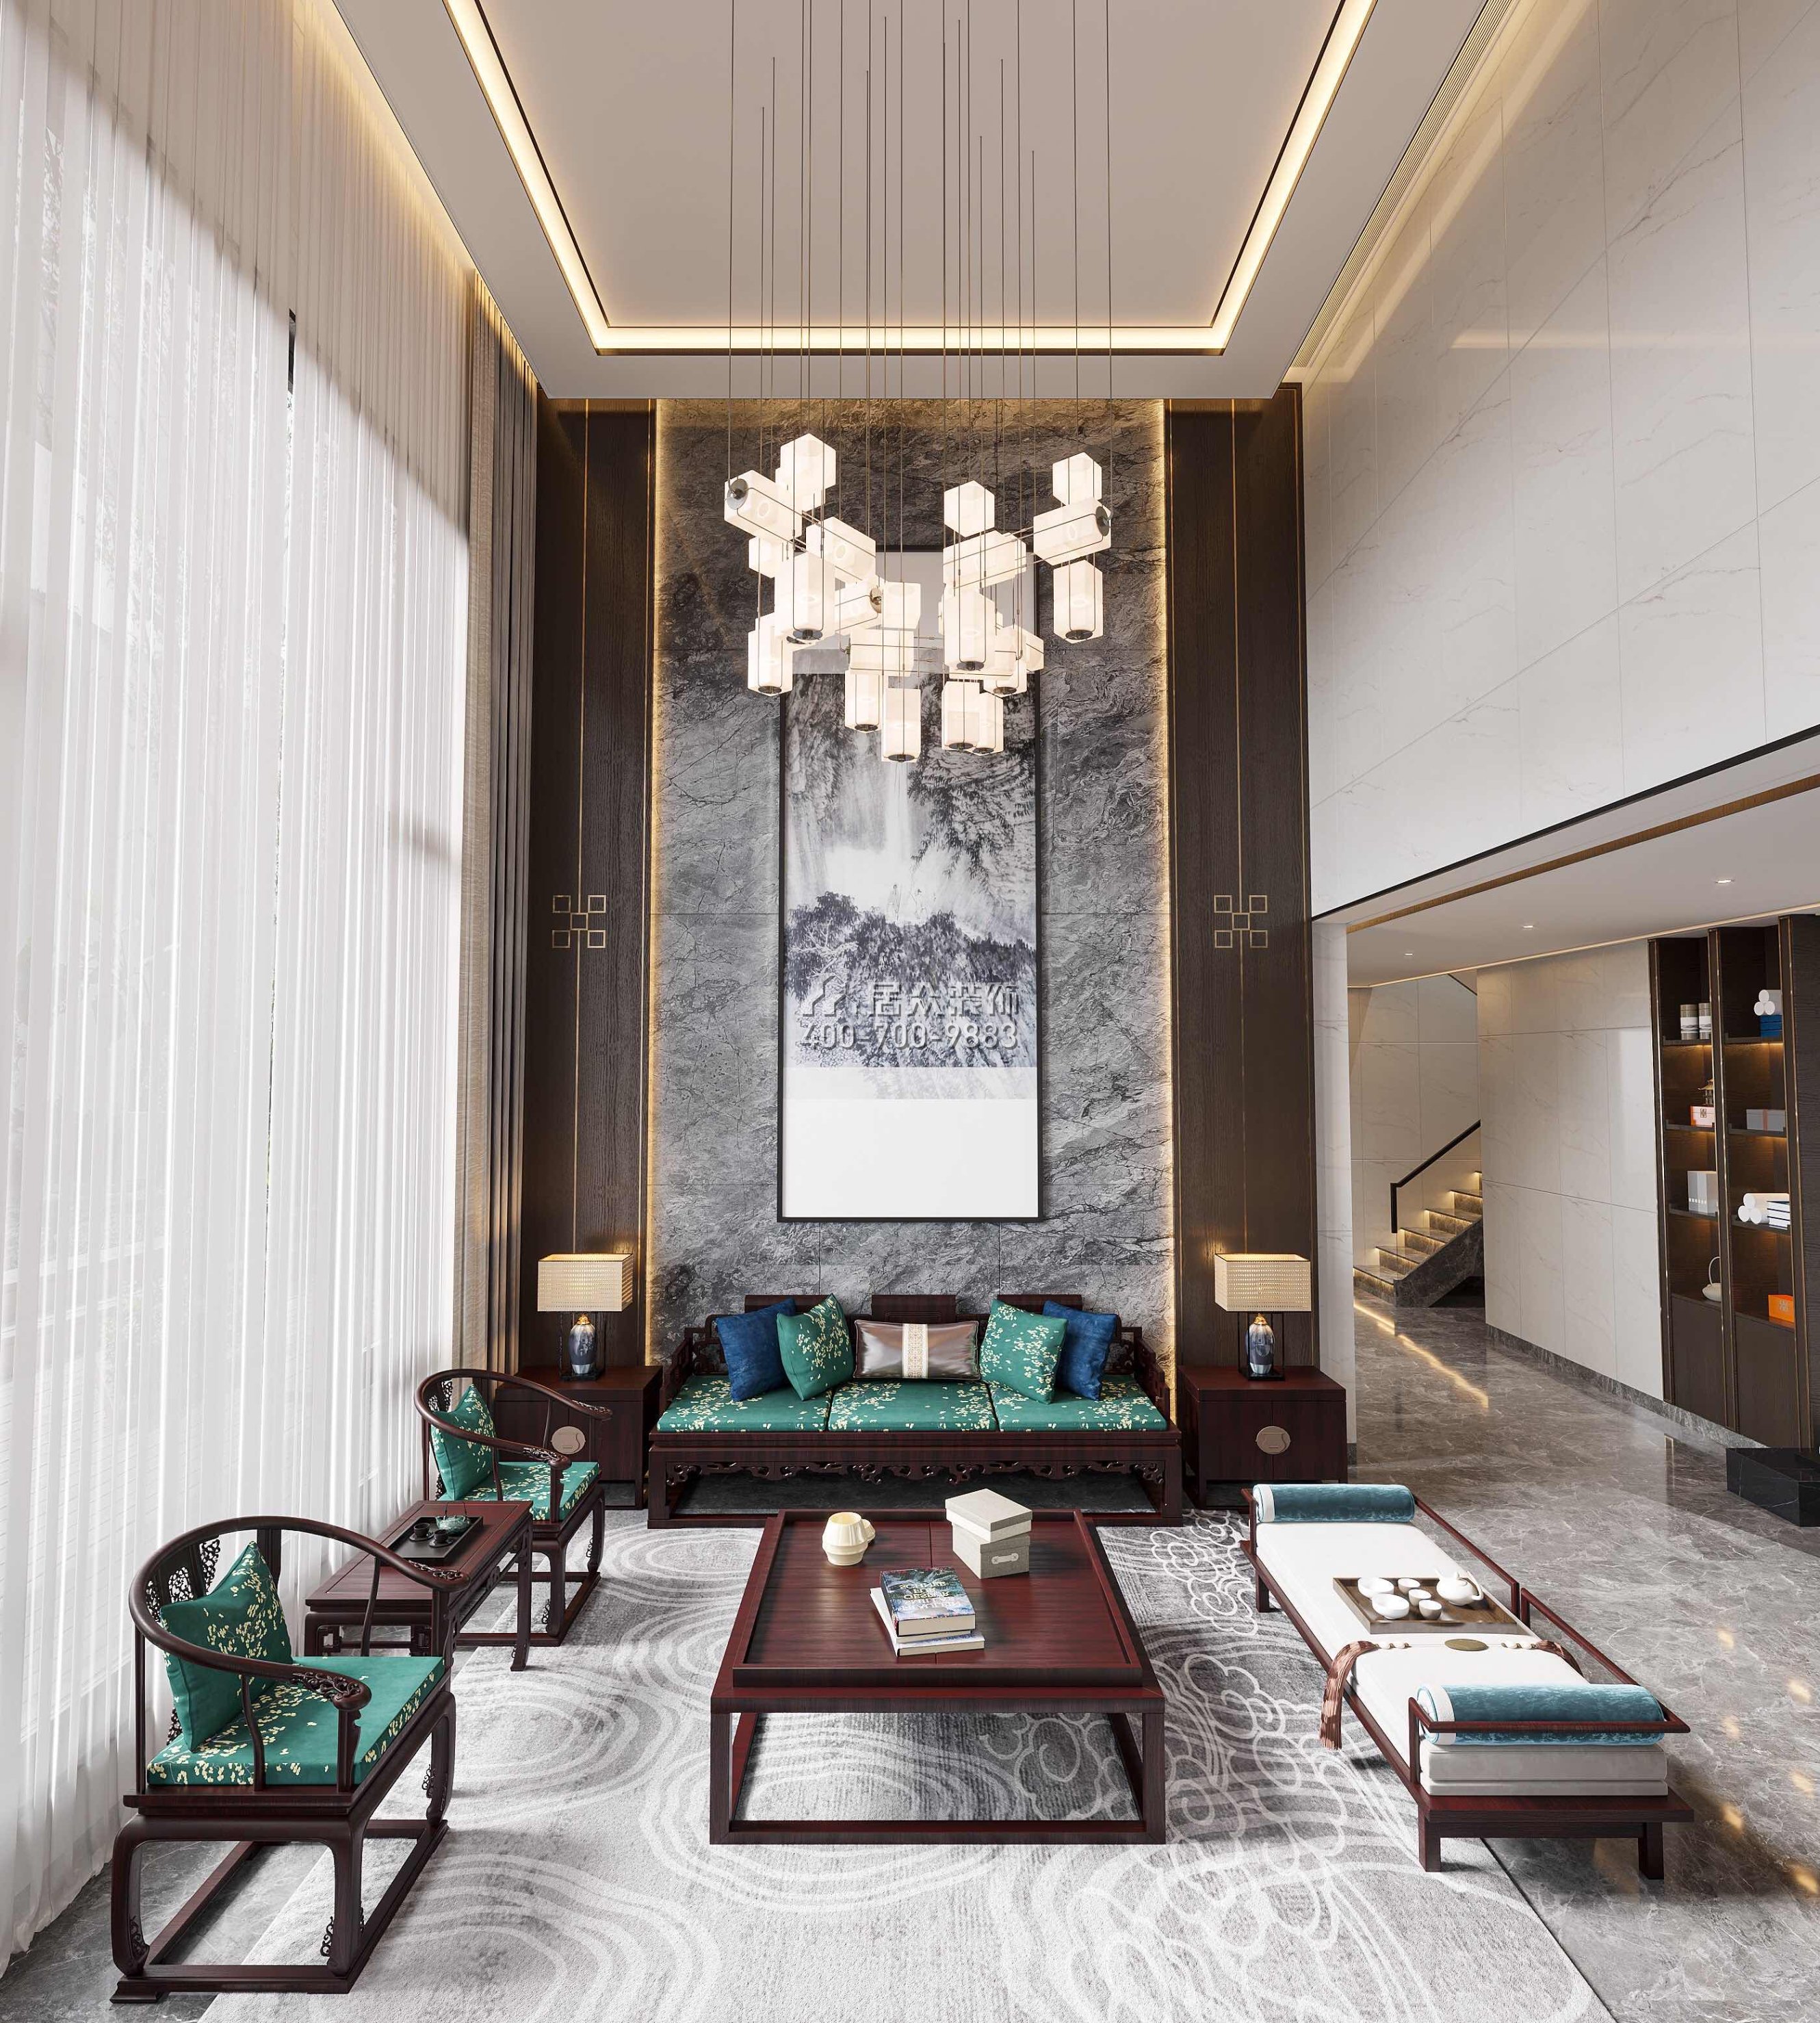 新世纪颐龙湾380平方米中式风格别墅户型客厅装修效果图